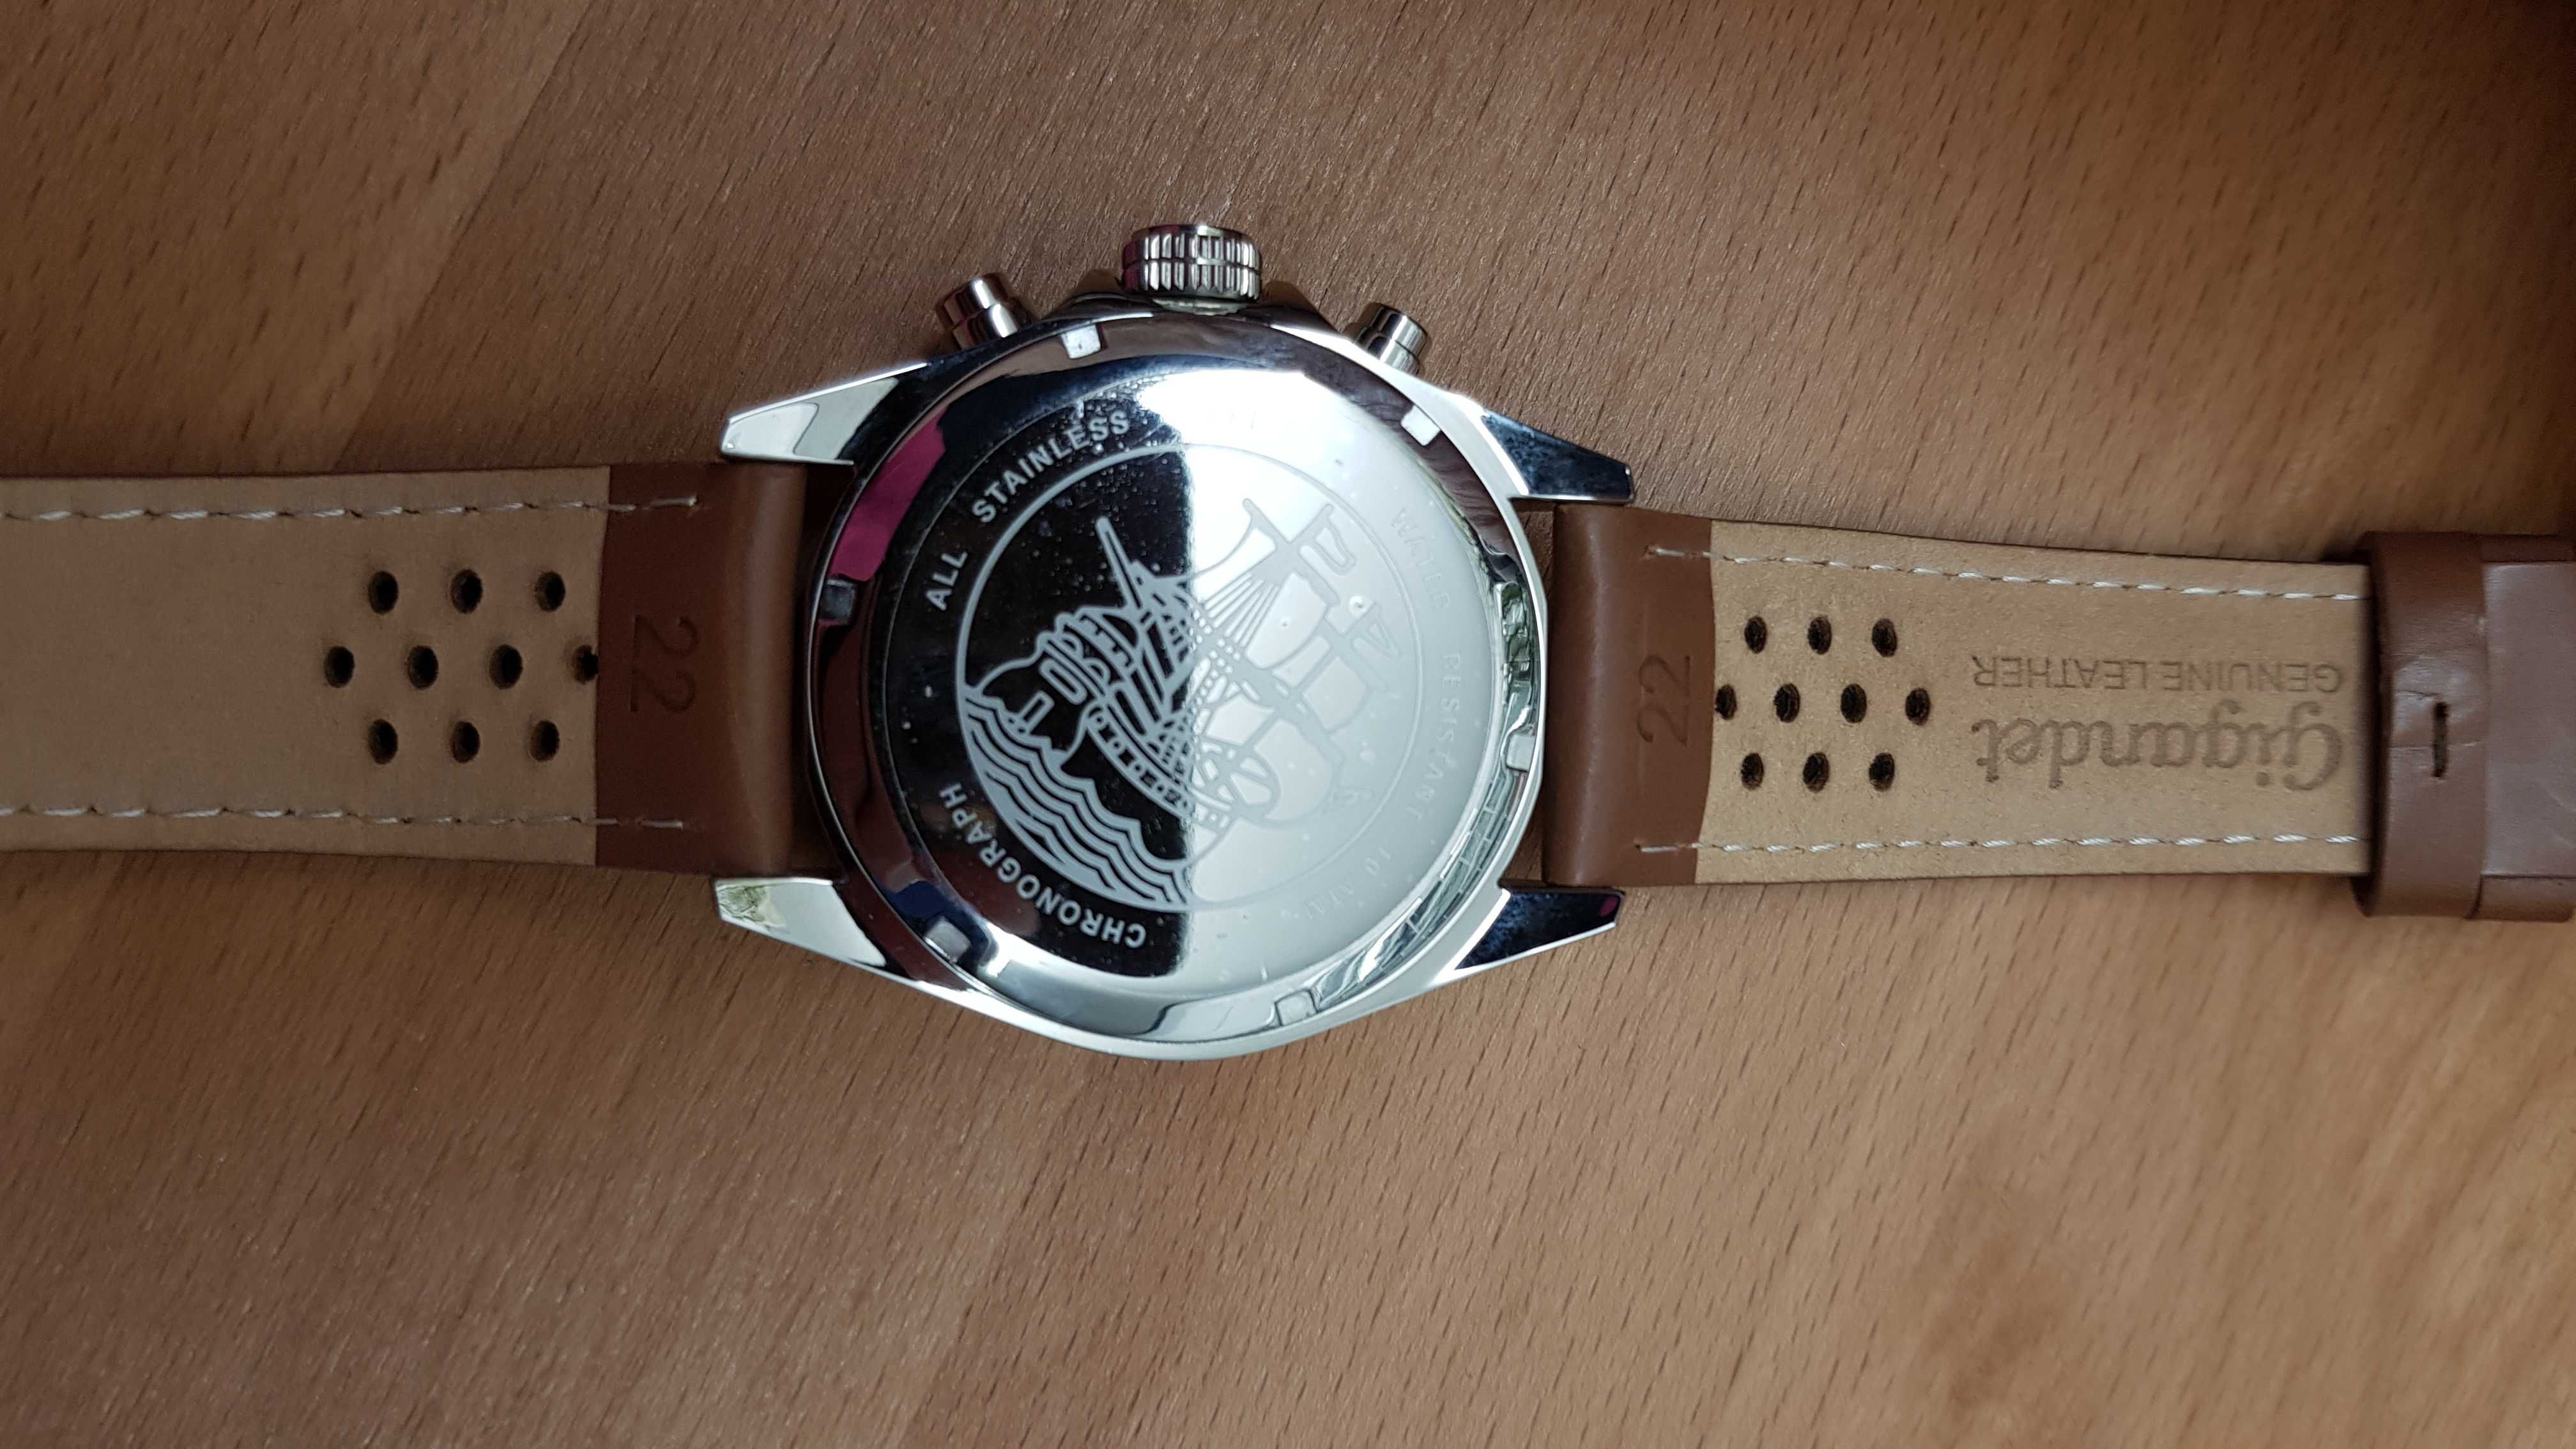 Nowy męski zegarek *Gigandet* Racetrack chronograf